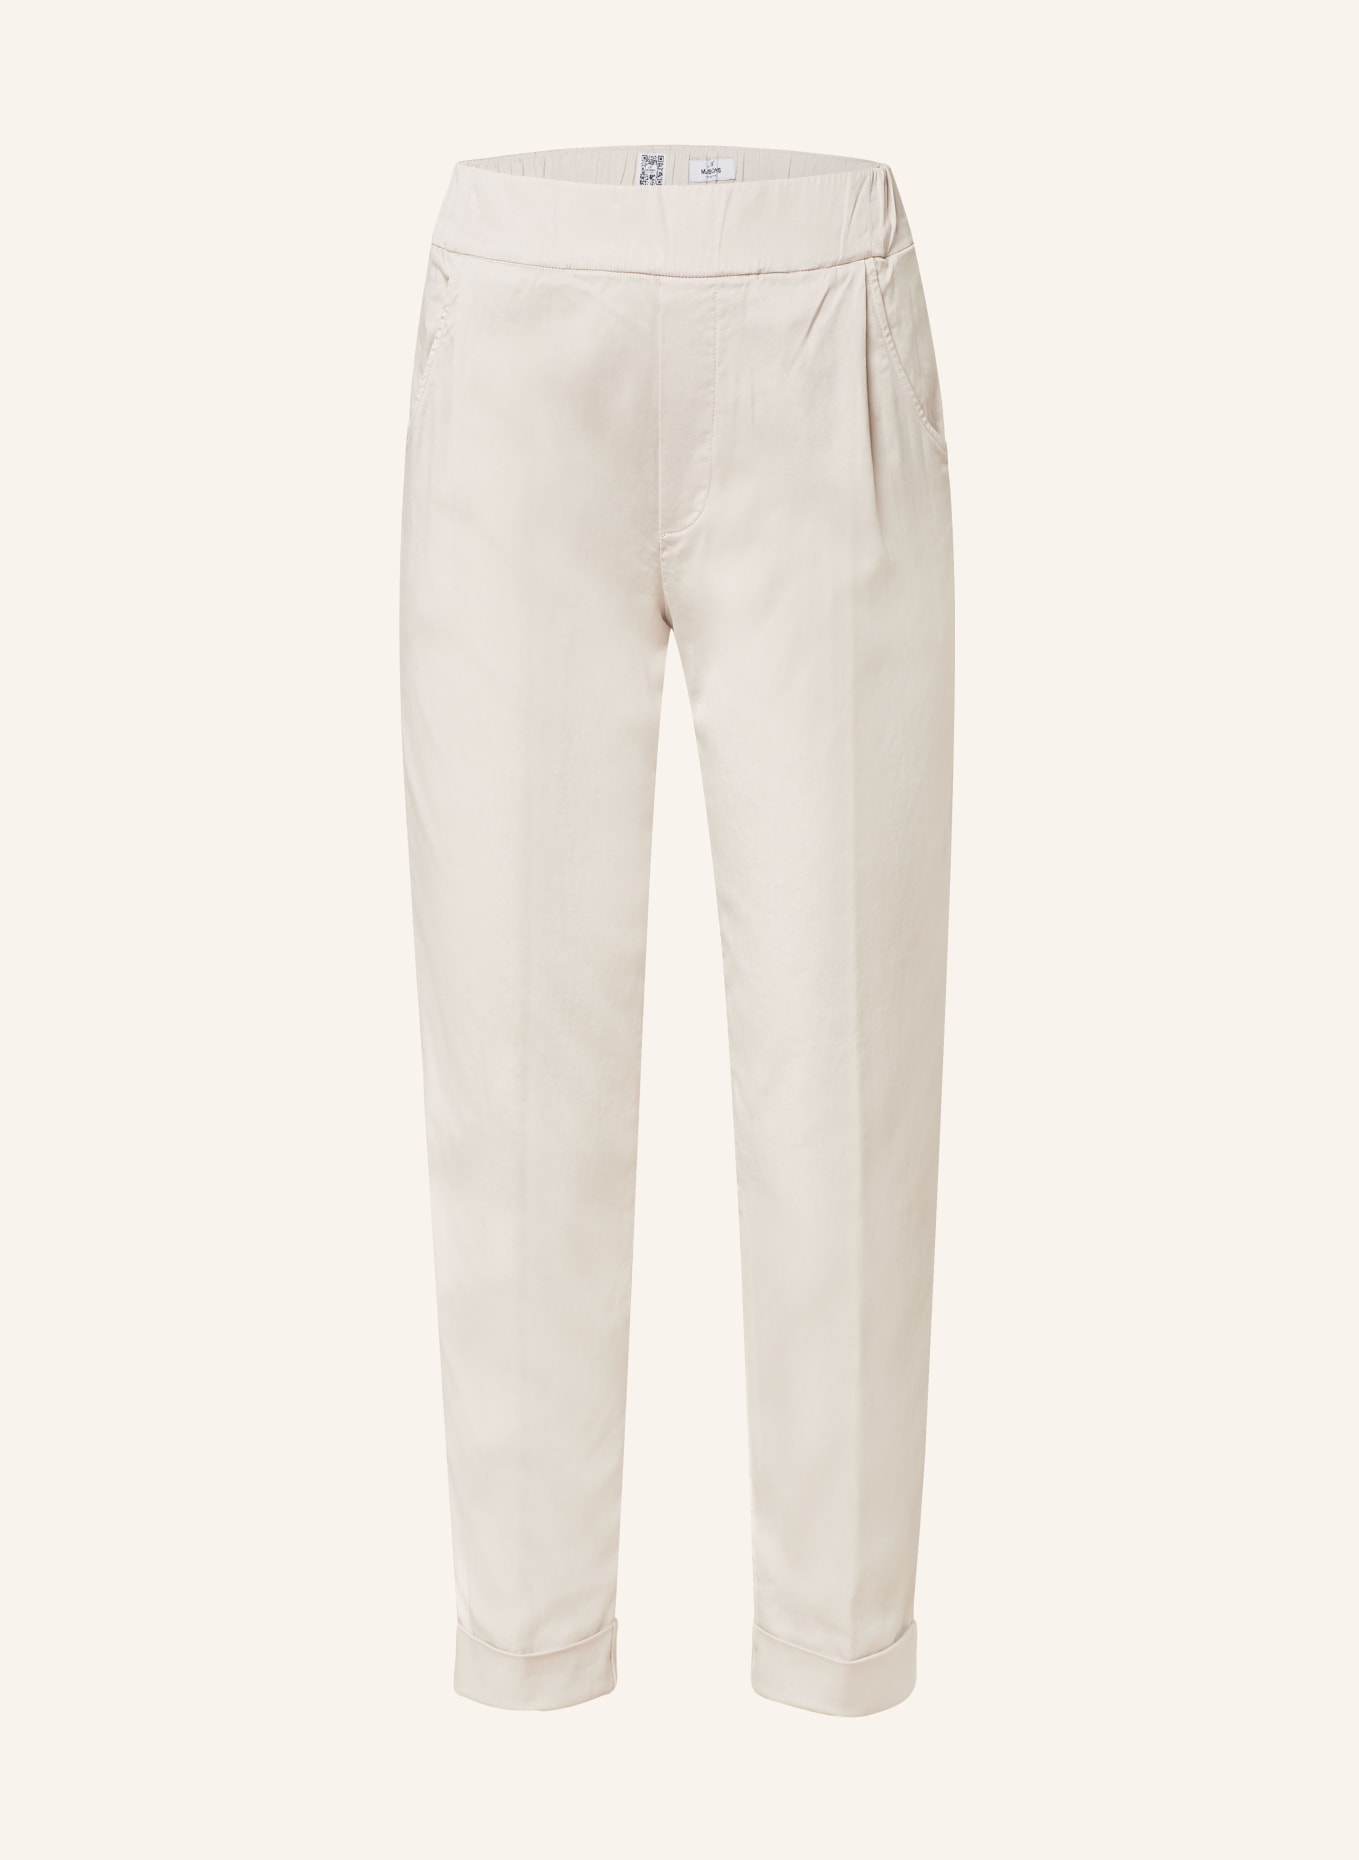 MASON'S Spodnie EASY JOGGER w stylu dresowym, Kolor: KREMOWY (Obrazek 1)